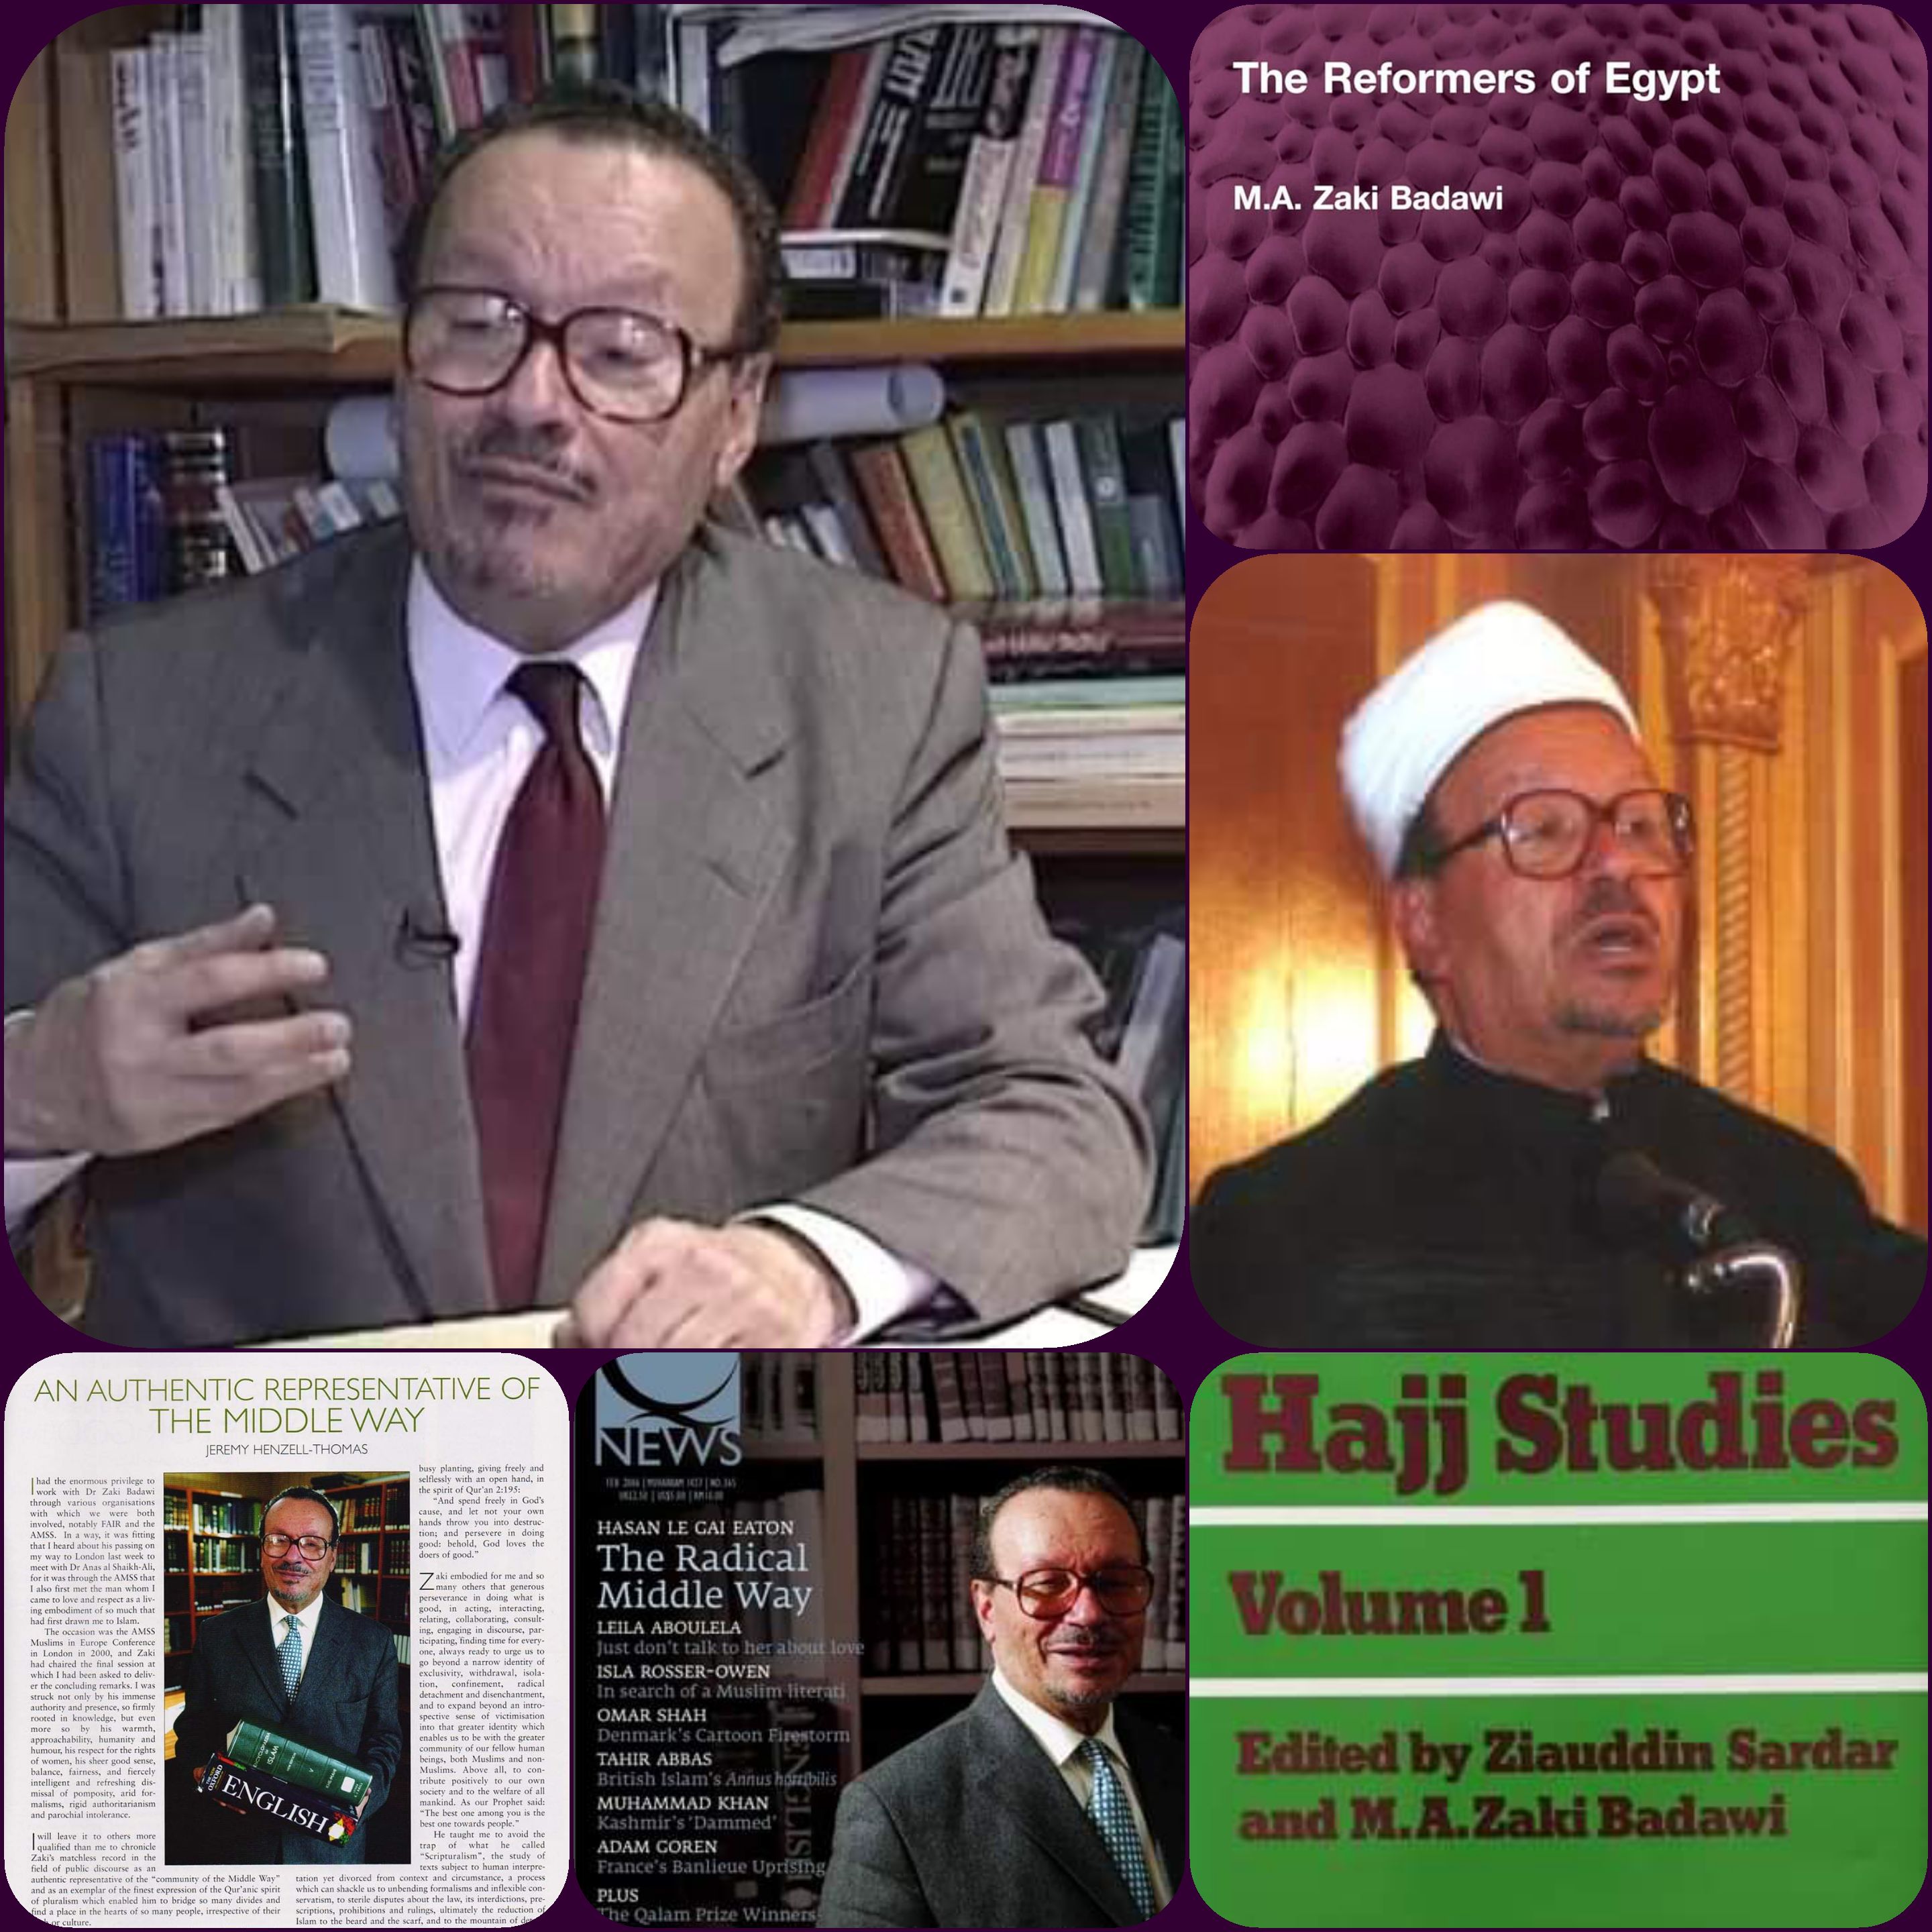 كان الشيخ الأزهري الدكتور زكي بدوي شخصية عالمة وعالمية ساهم في النهوض بالتعليم والفكر الإسلامي في الغرب وإفريقيا وآسيا.